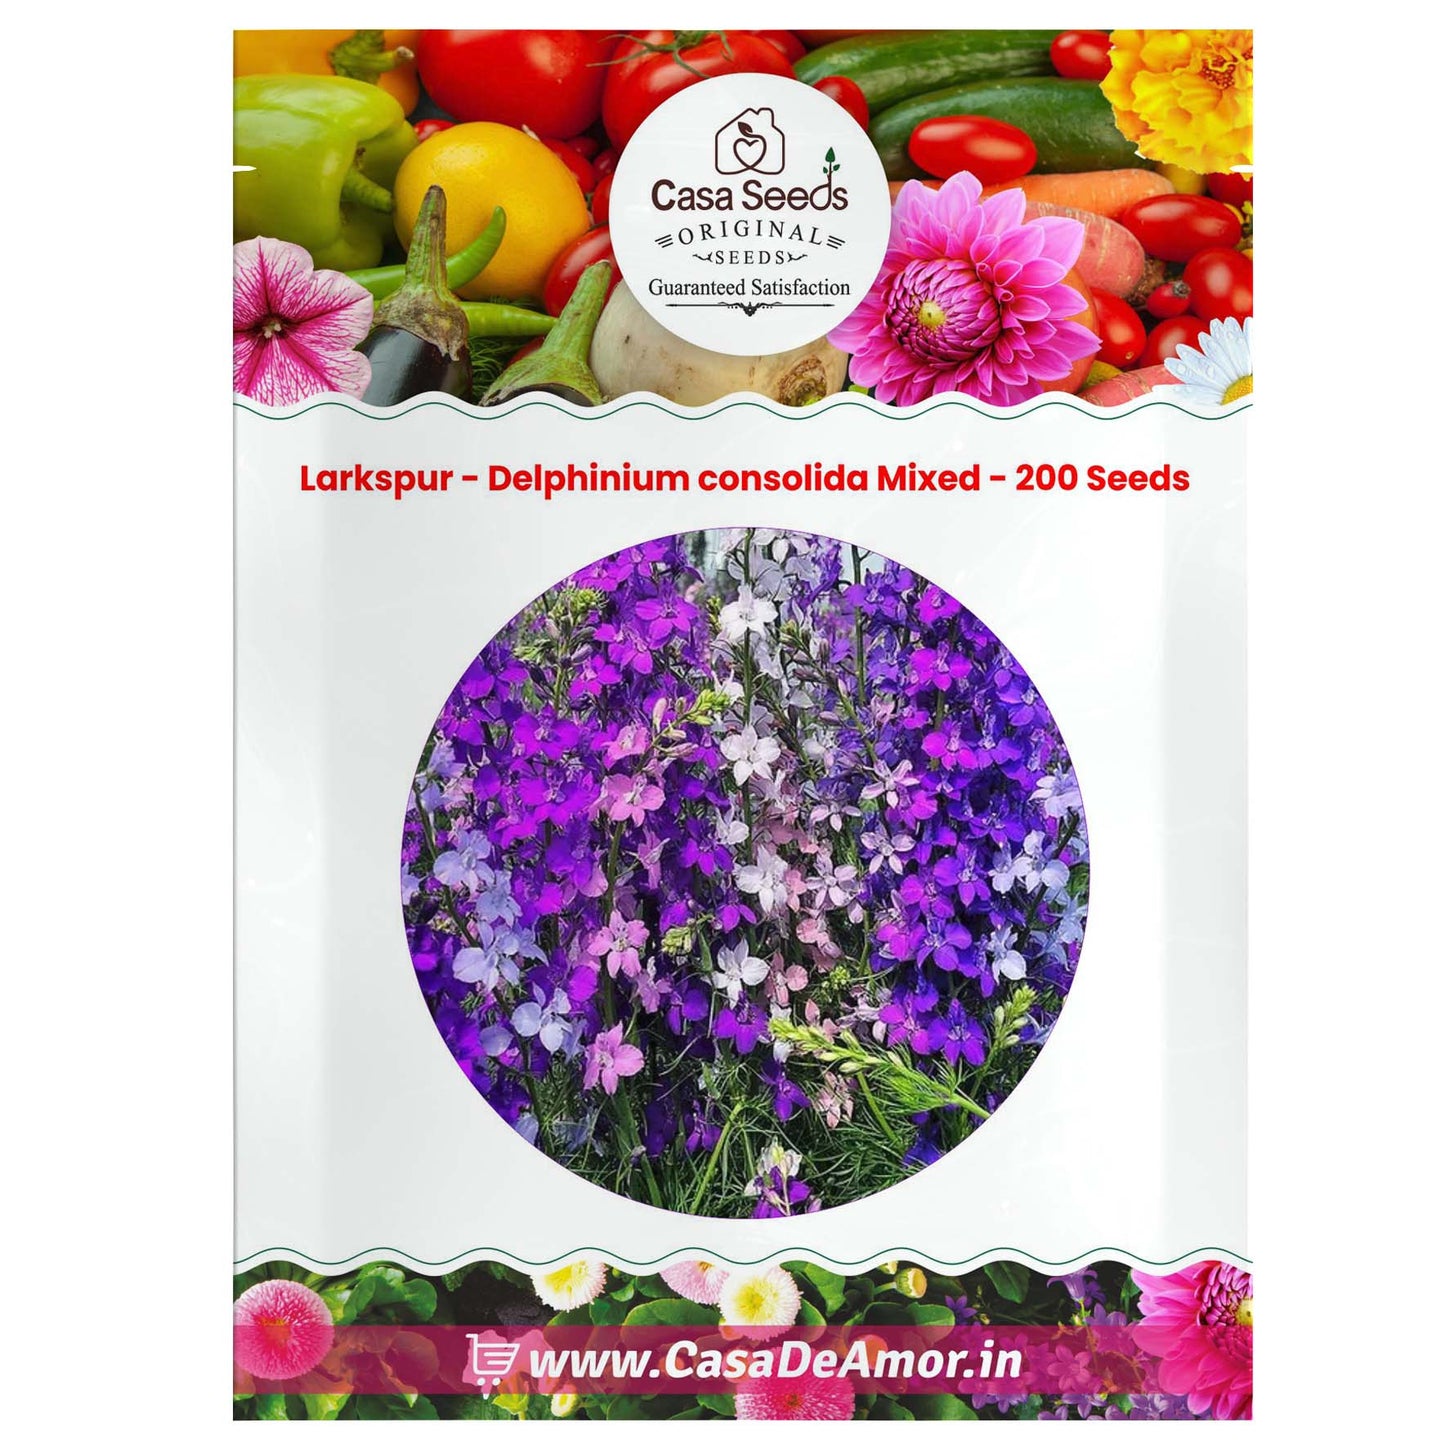 Larkspur - Delphinium consolida Mixed - 200 Seeds